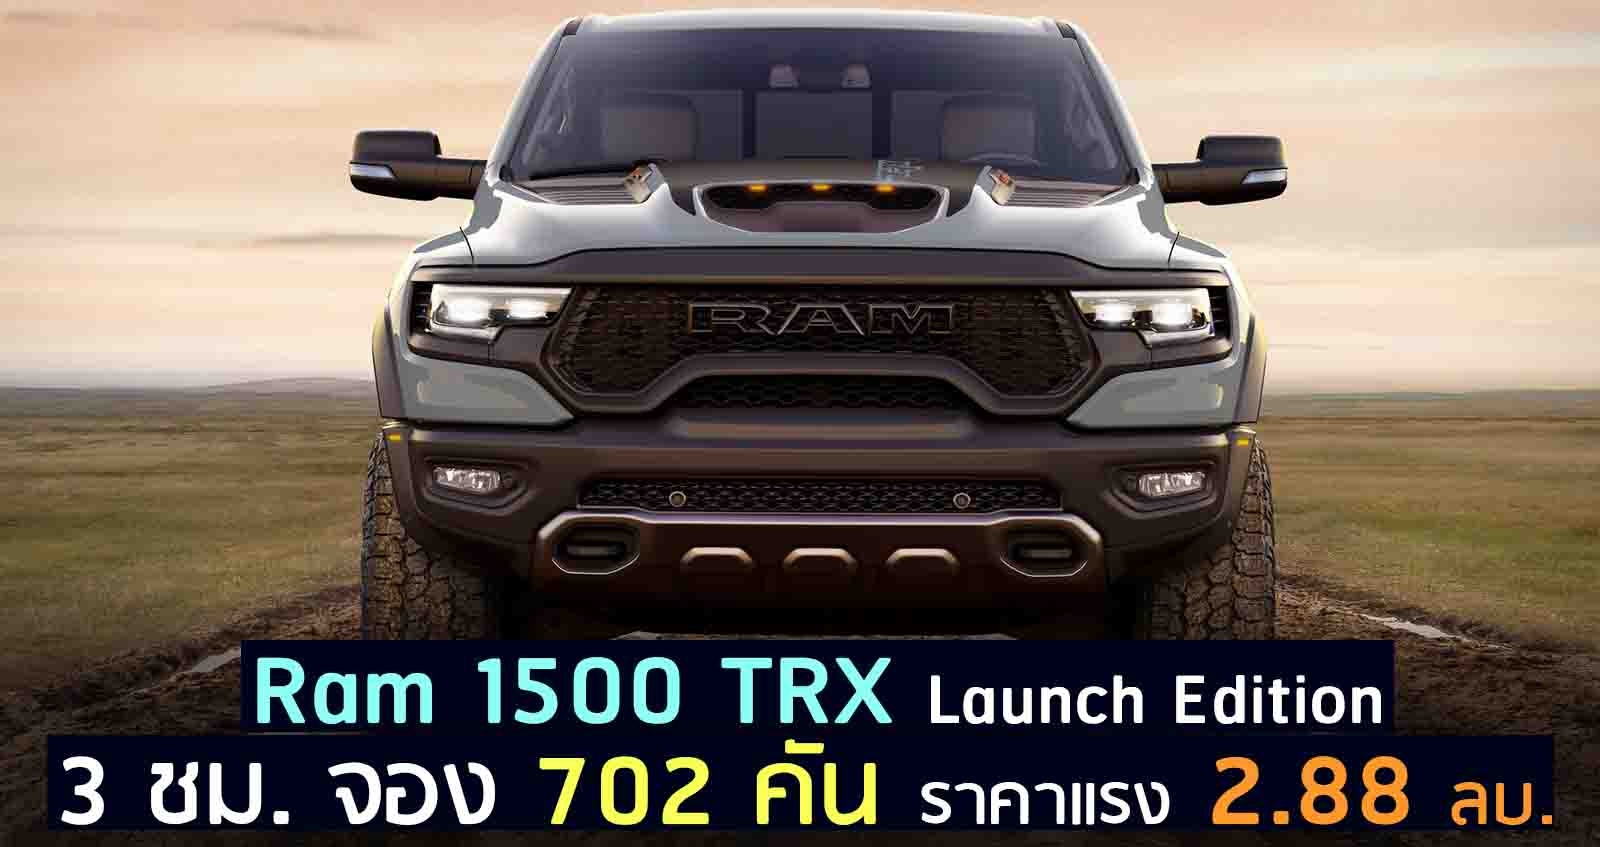 เปิดตัว 3 ชม. จอง 702 คัน Ram 1500 TRX Launch Edition รุ่นพิเศษ ราคาแรง 2.88 ล้านบาท